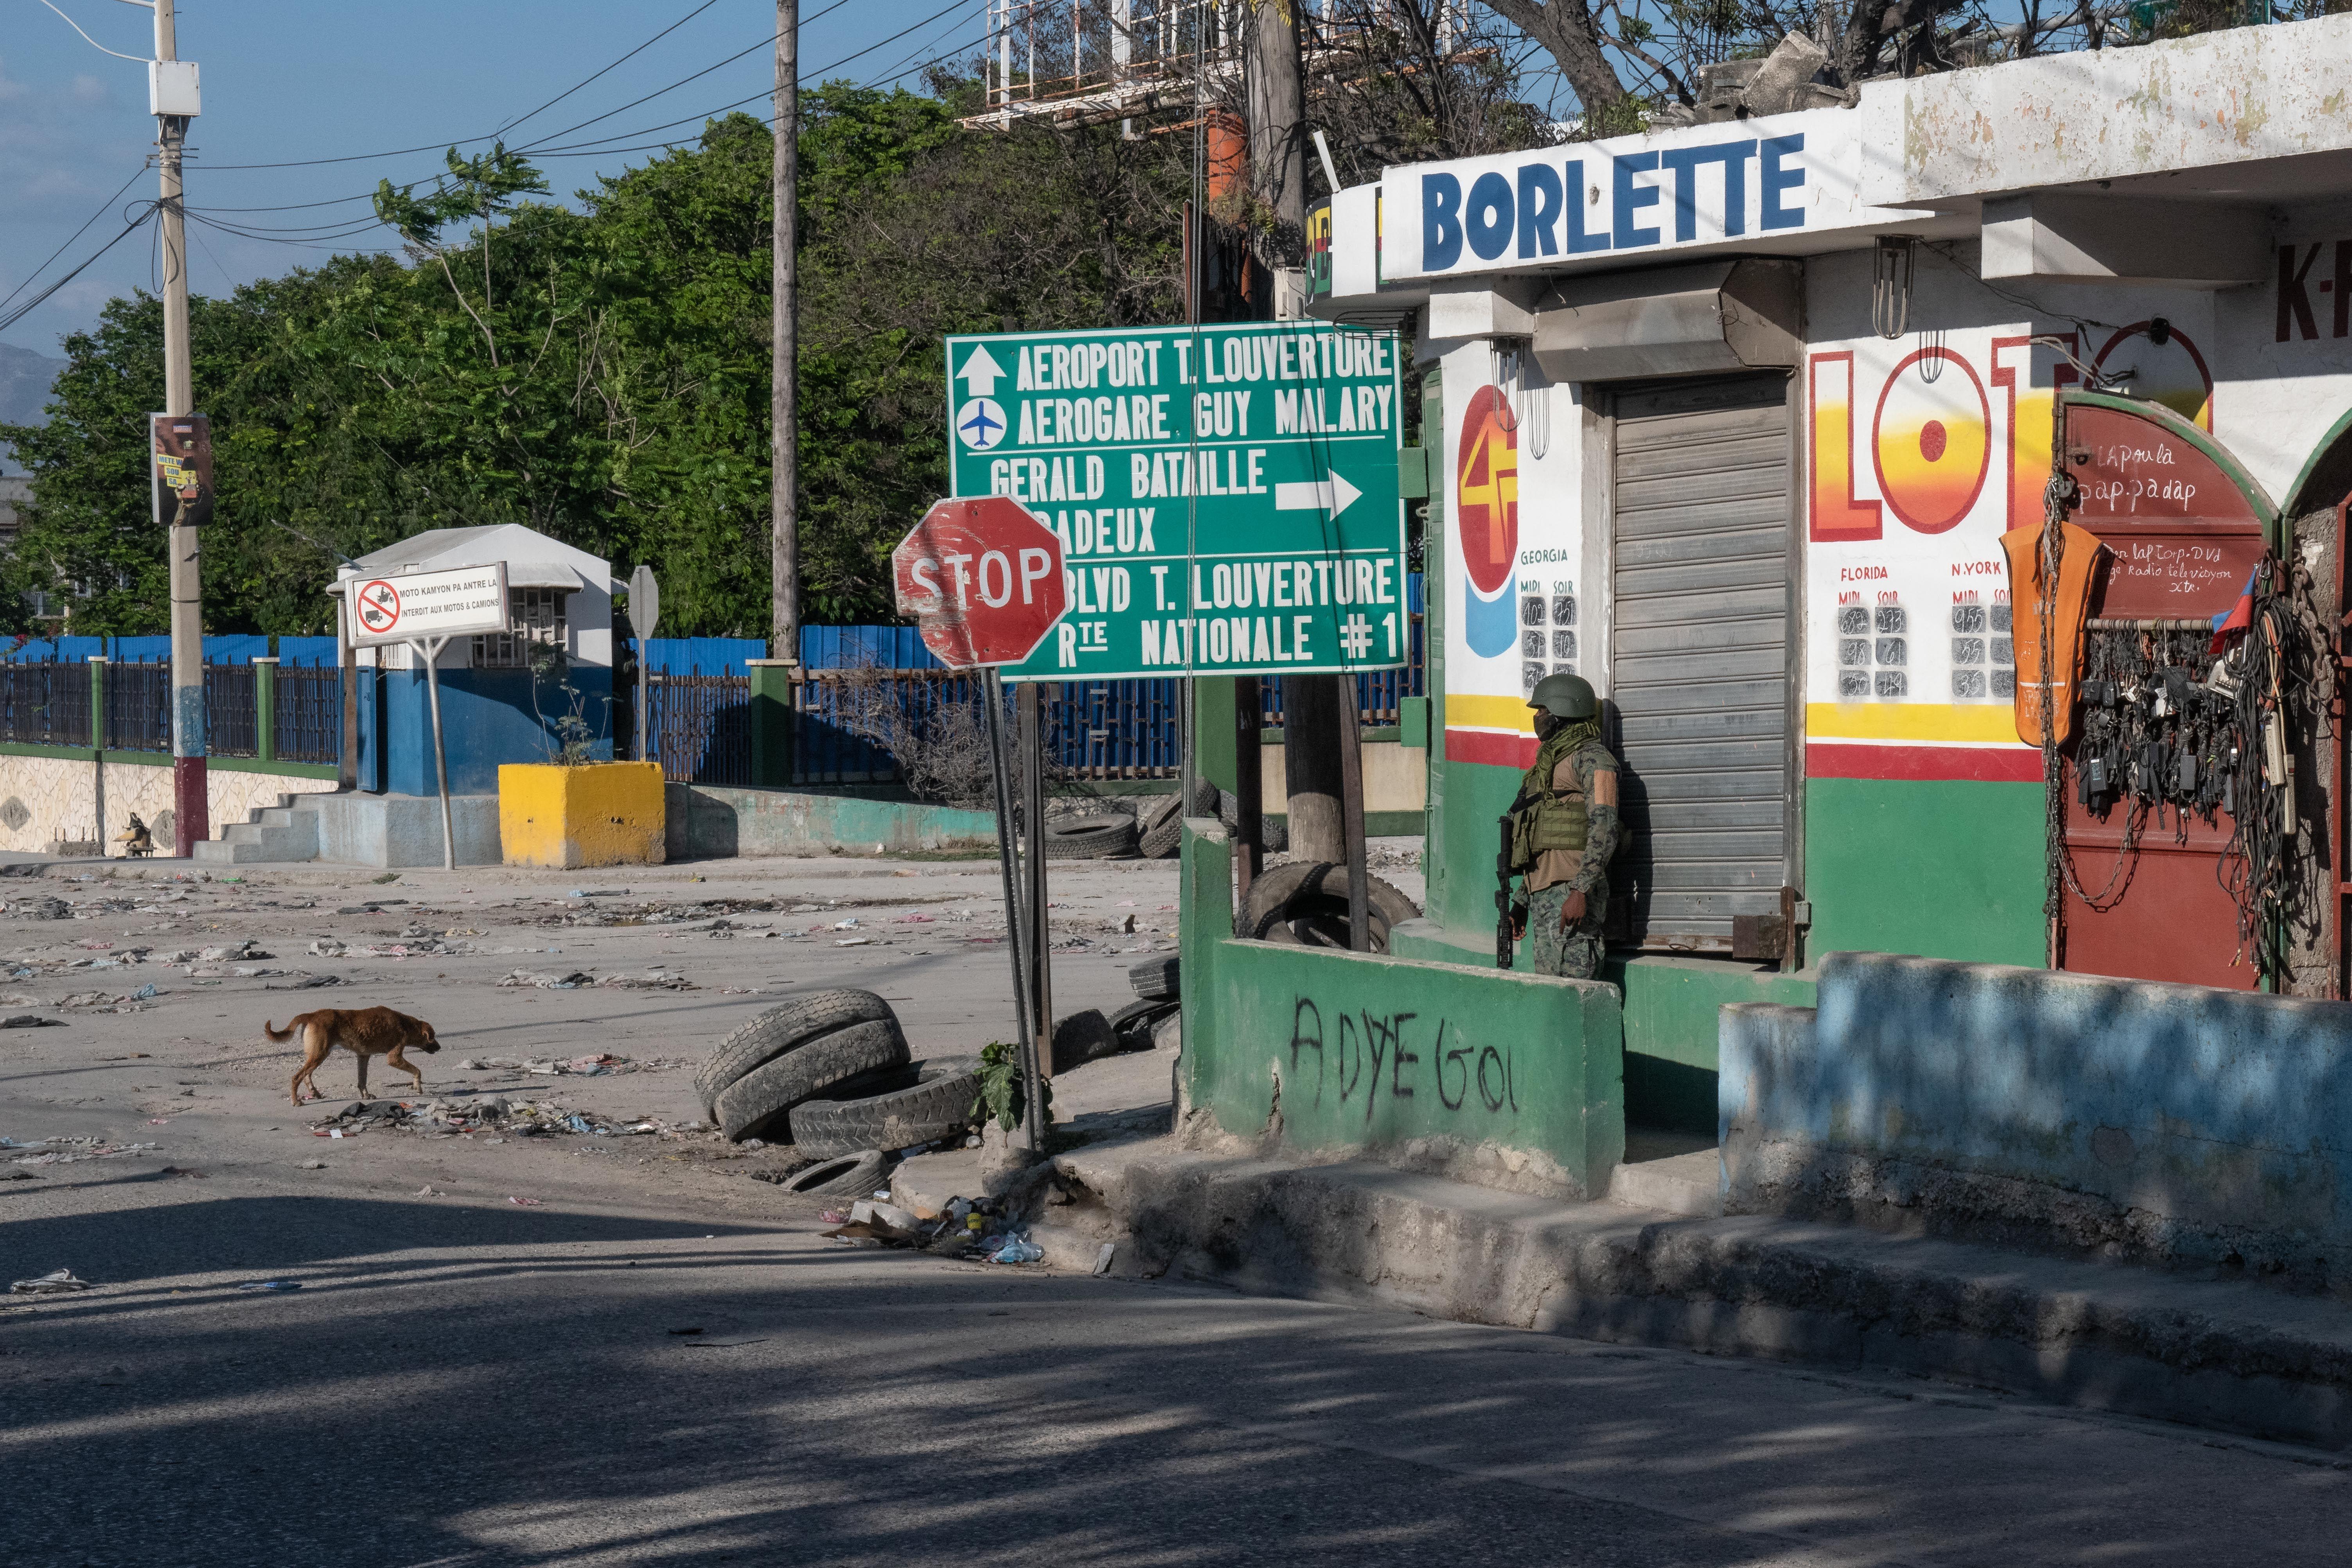 Un militar se apoya en la fachada de un edificio en una calle de Puerto Príncipe